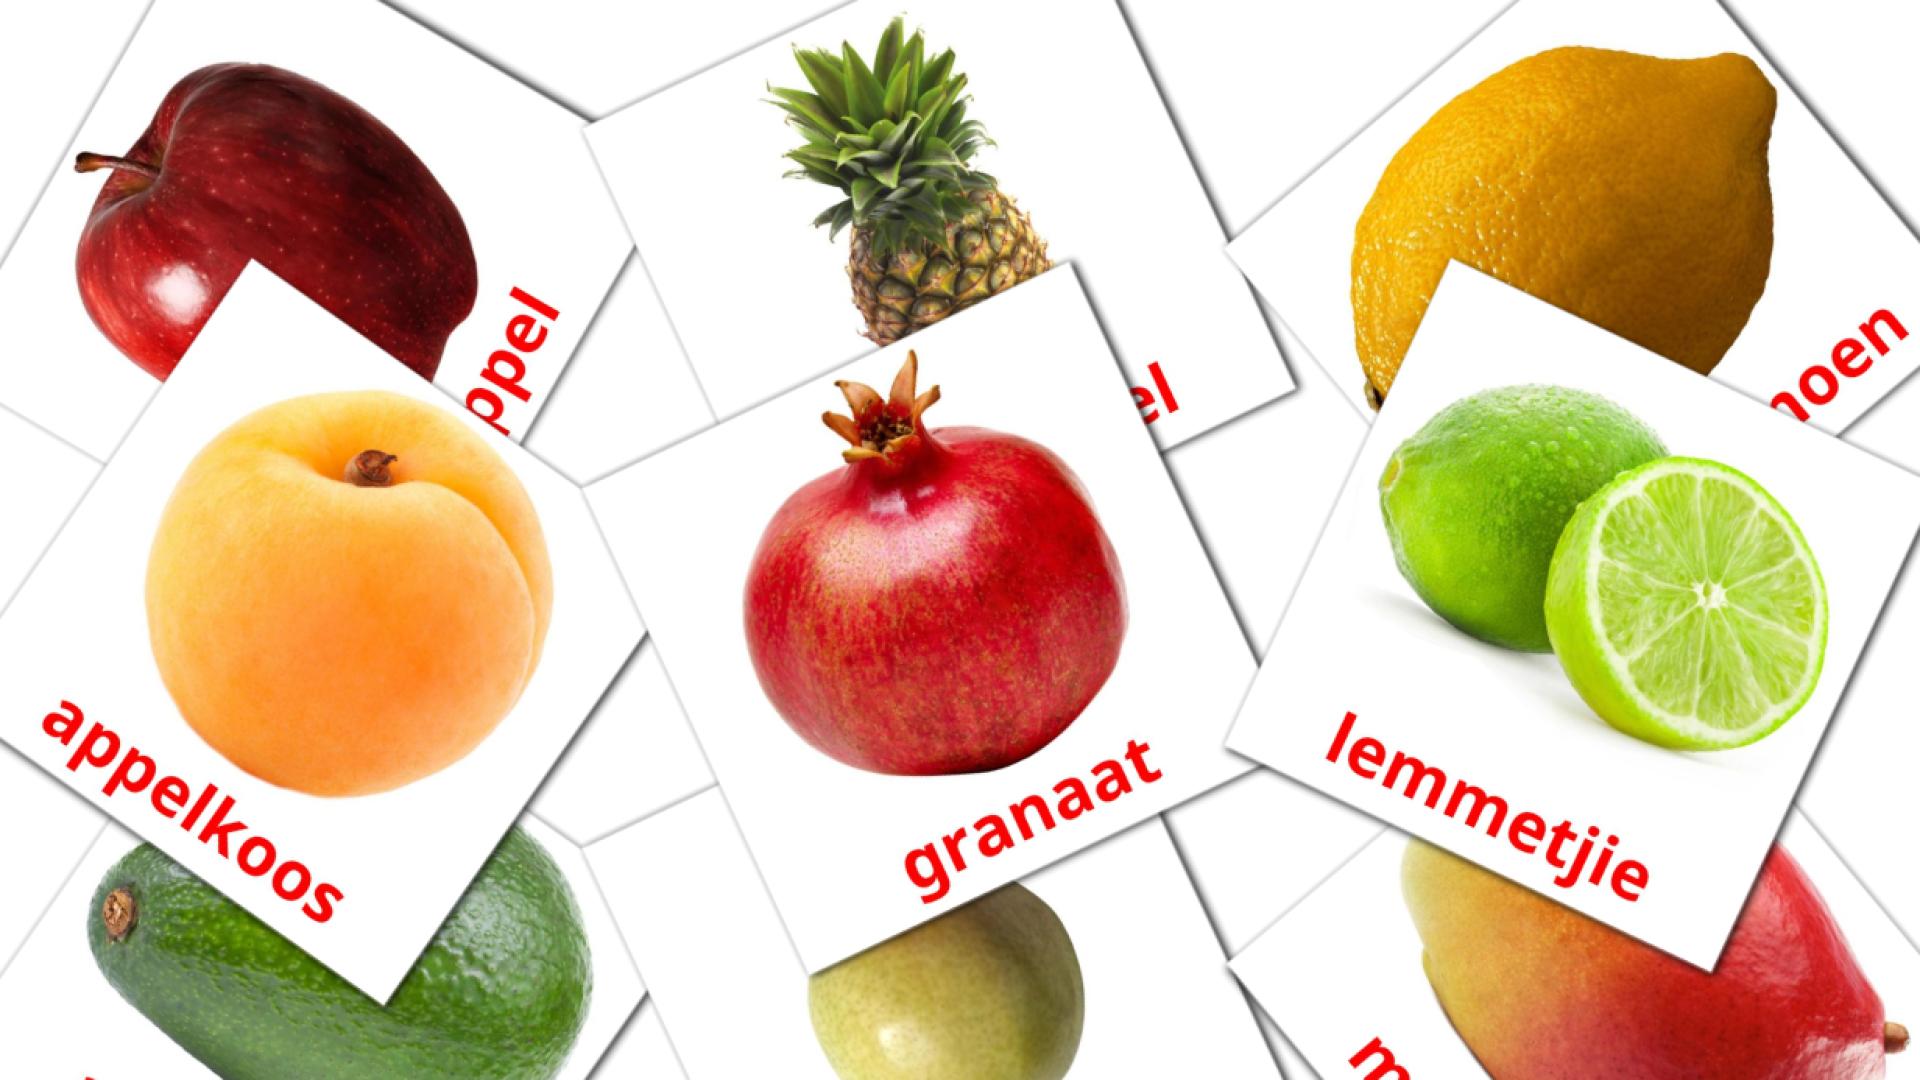 Obst - Afrikaans Vokabelkarten